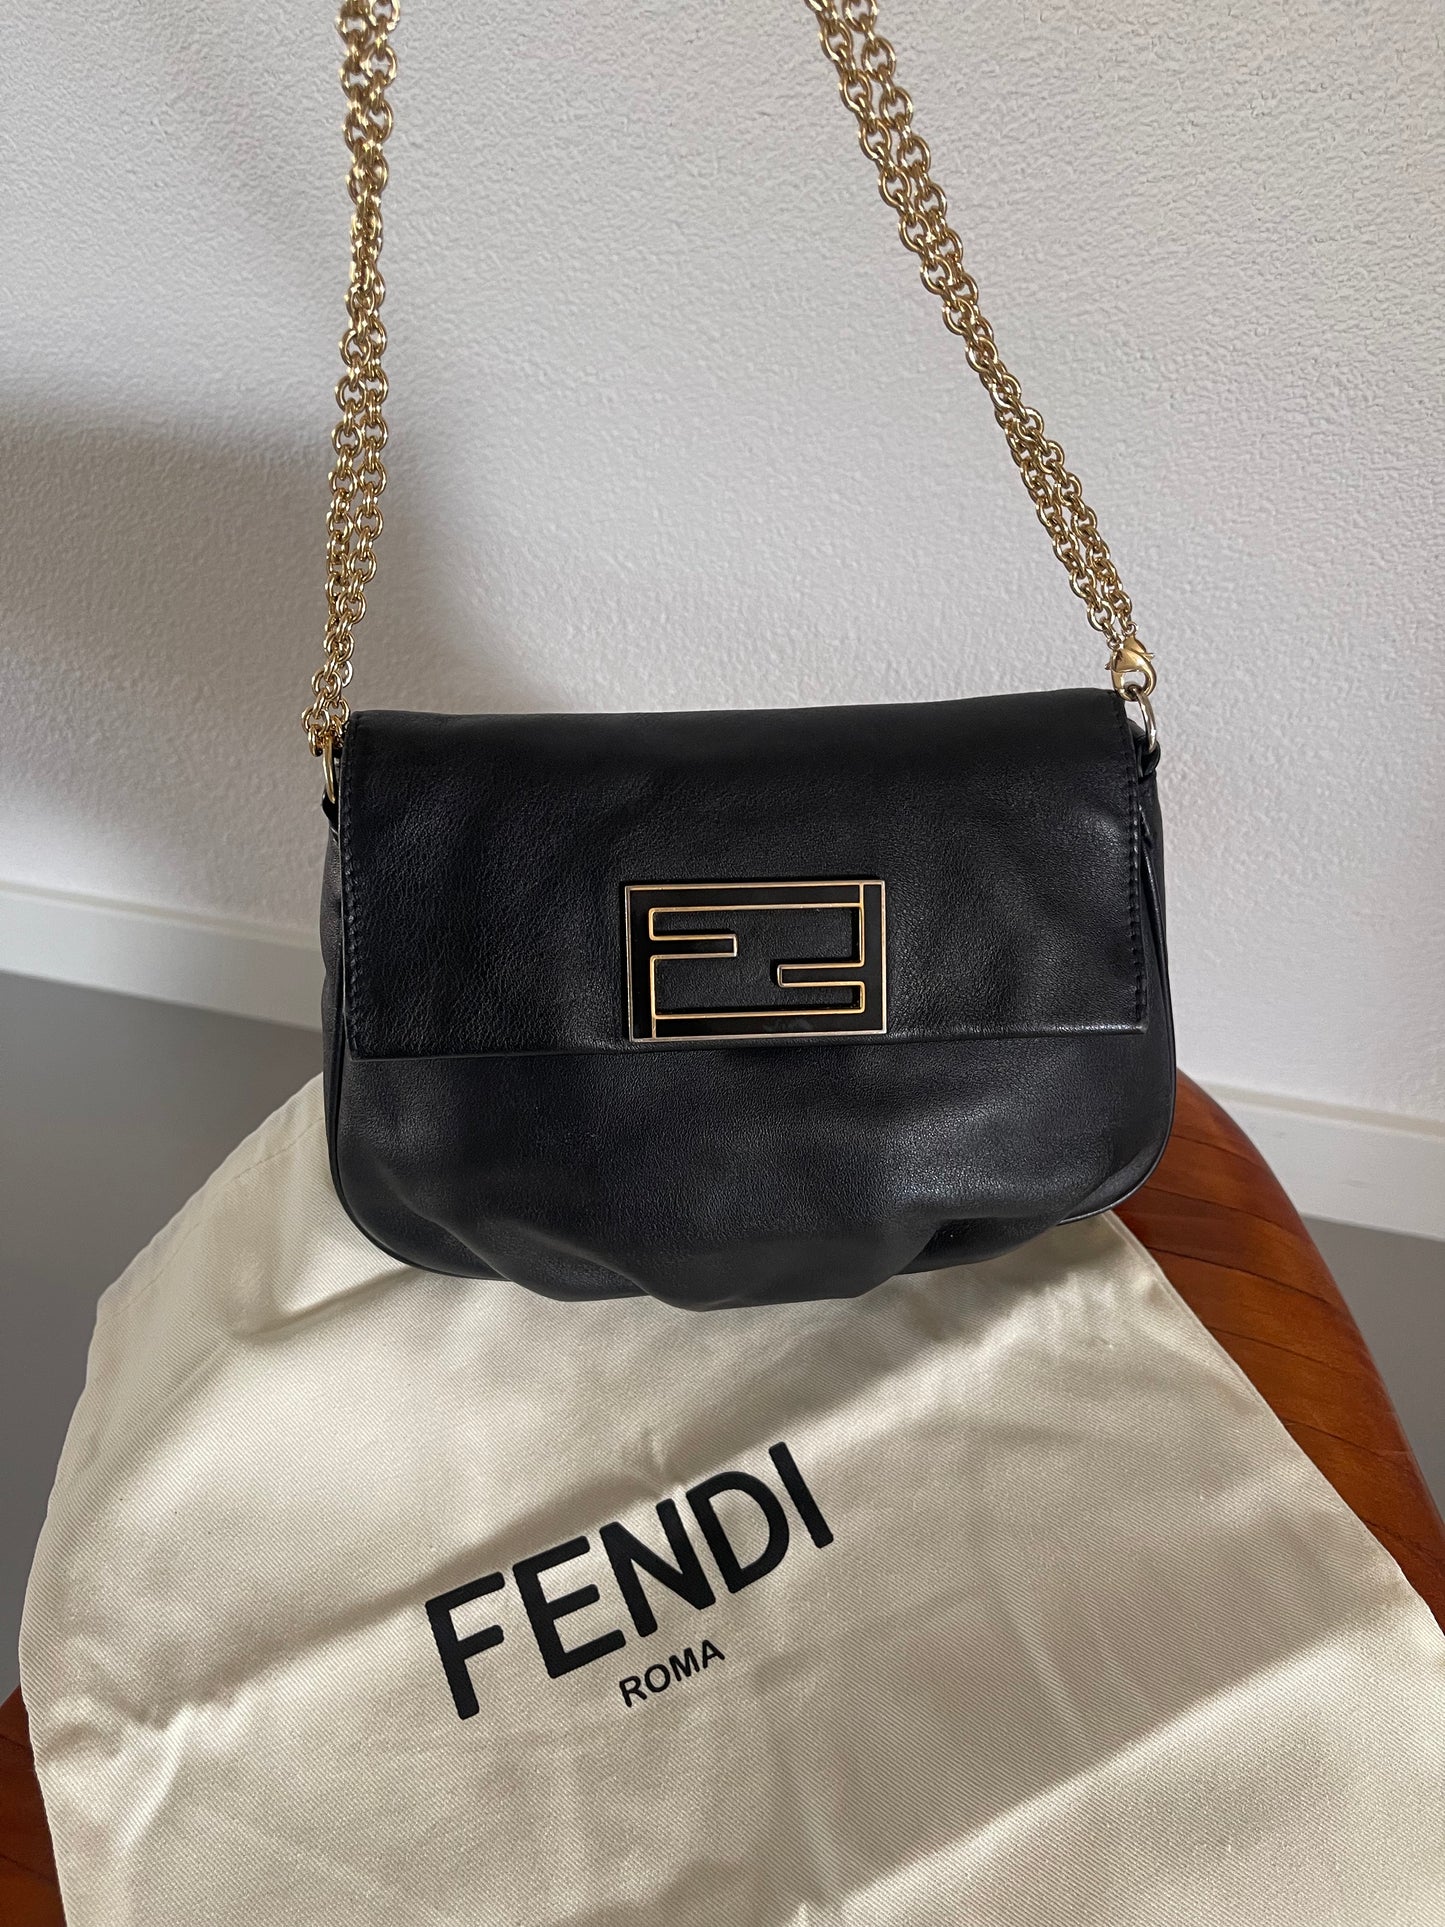 Fendi baguette leather crossbody/shoulder bag